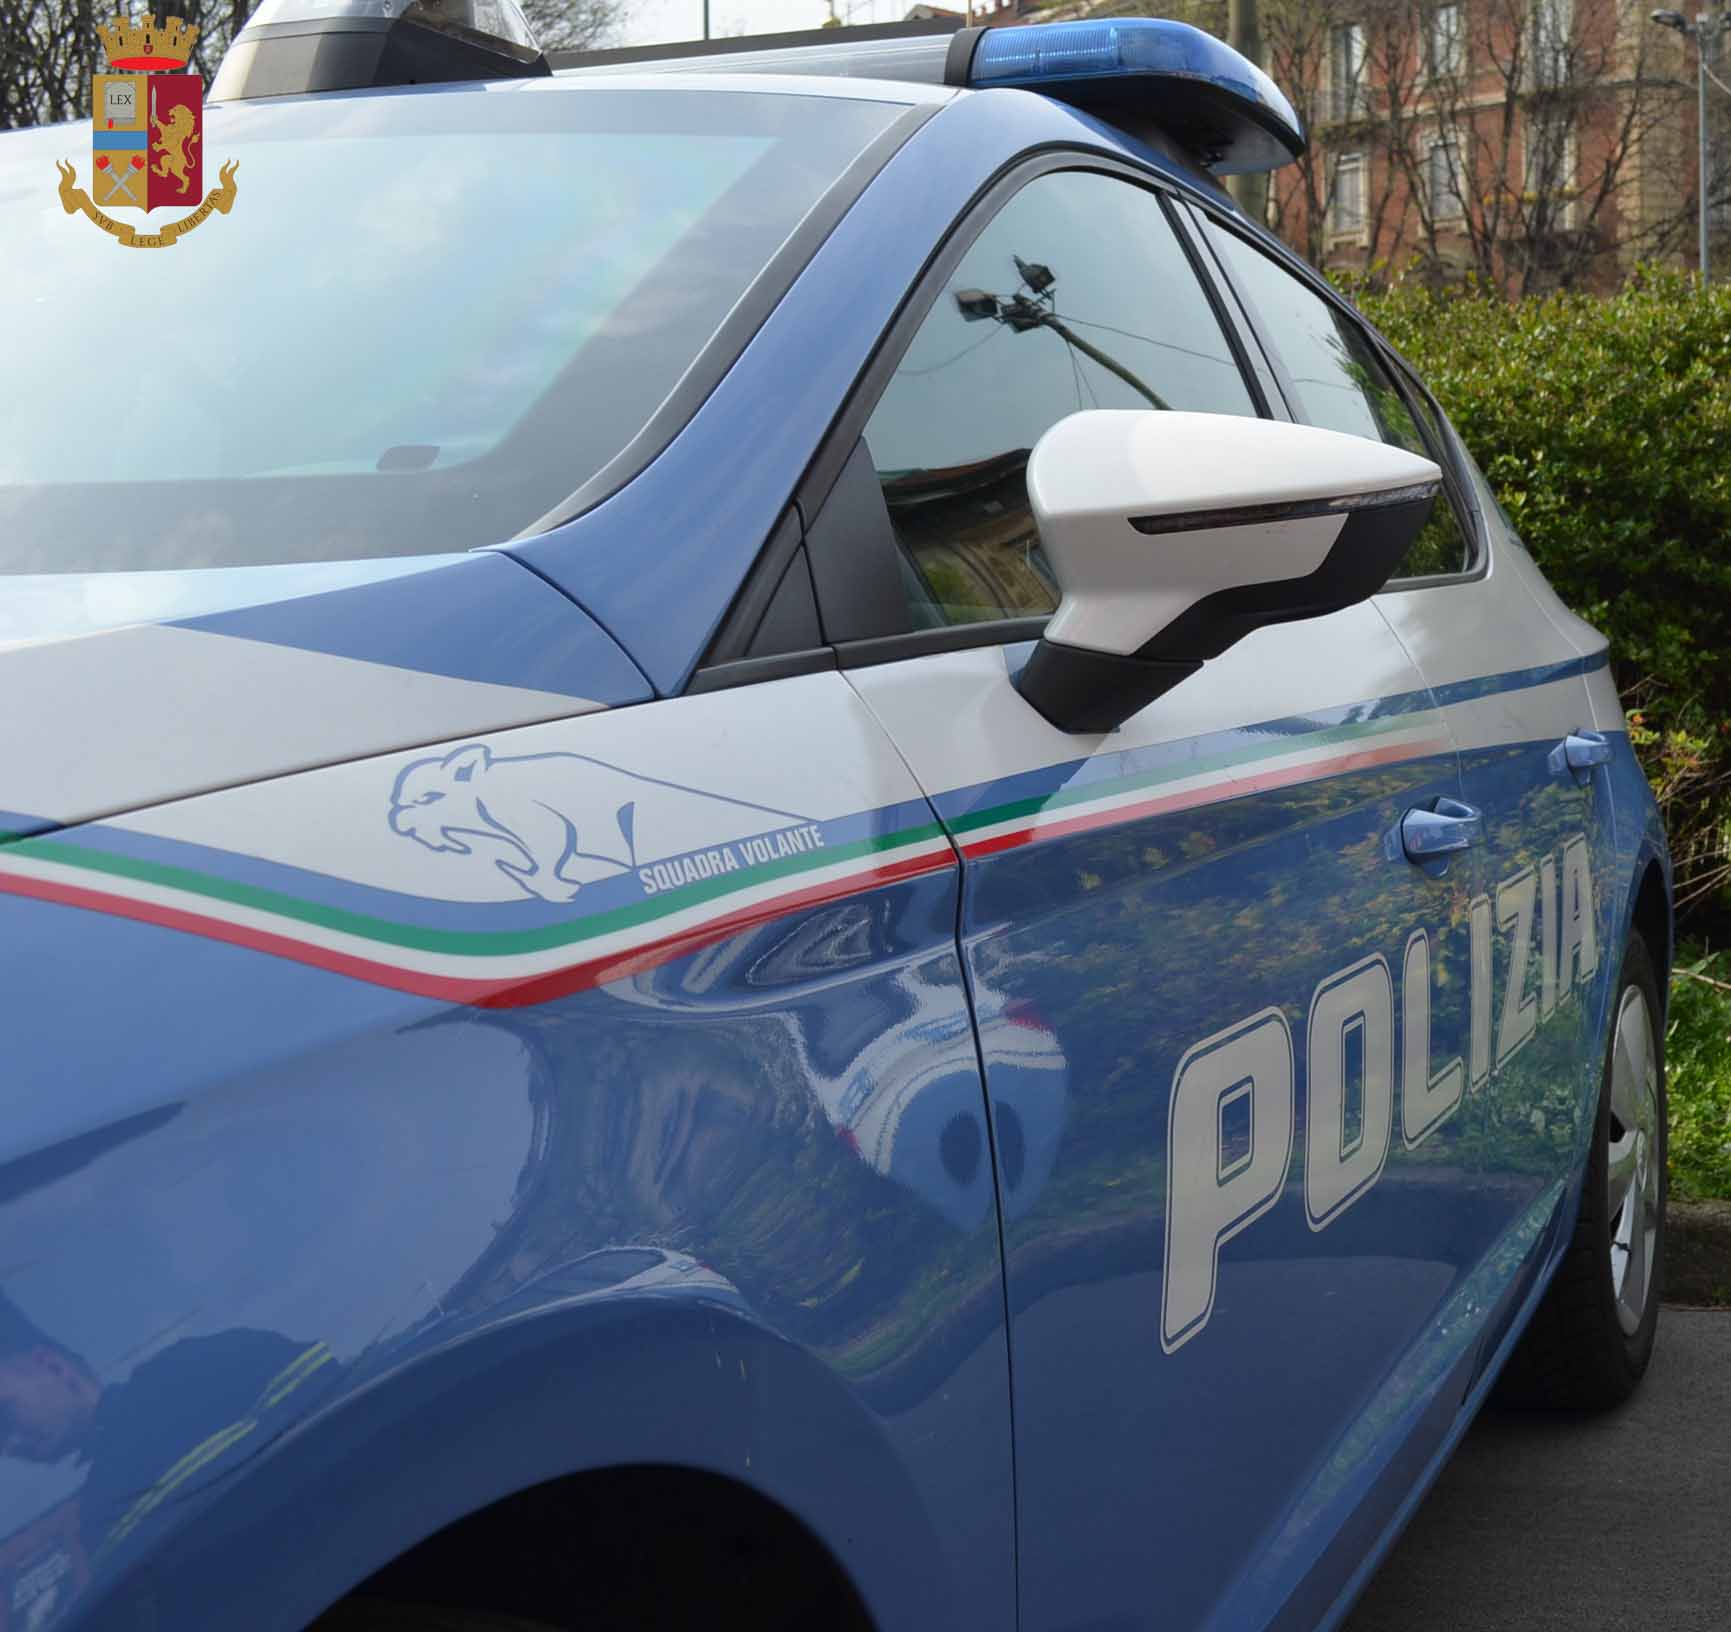 Milano: la Polizia di Stato arresta un uomo per danneggiamento aggravato e resistenza a Pubblico Ufficiale.